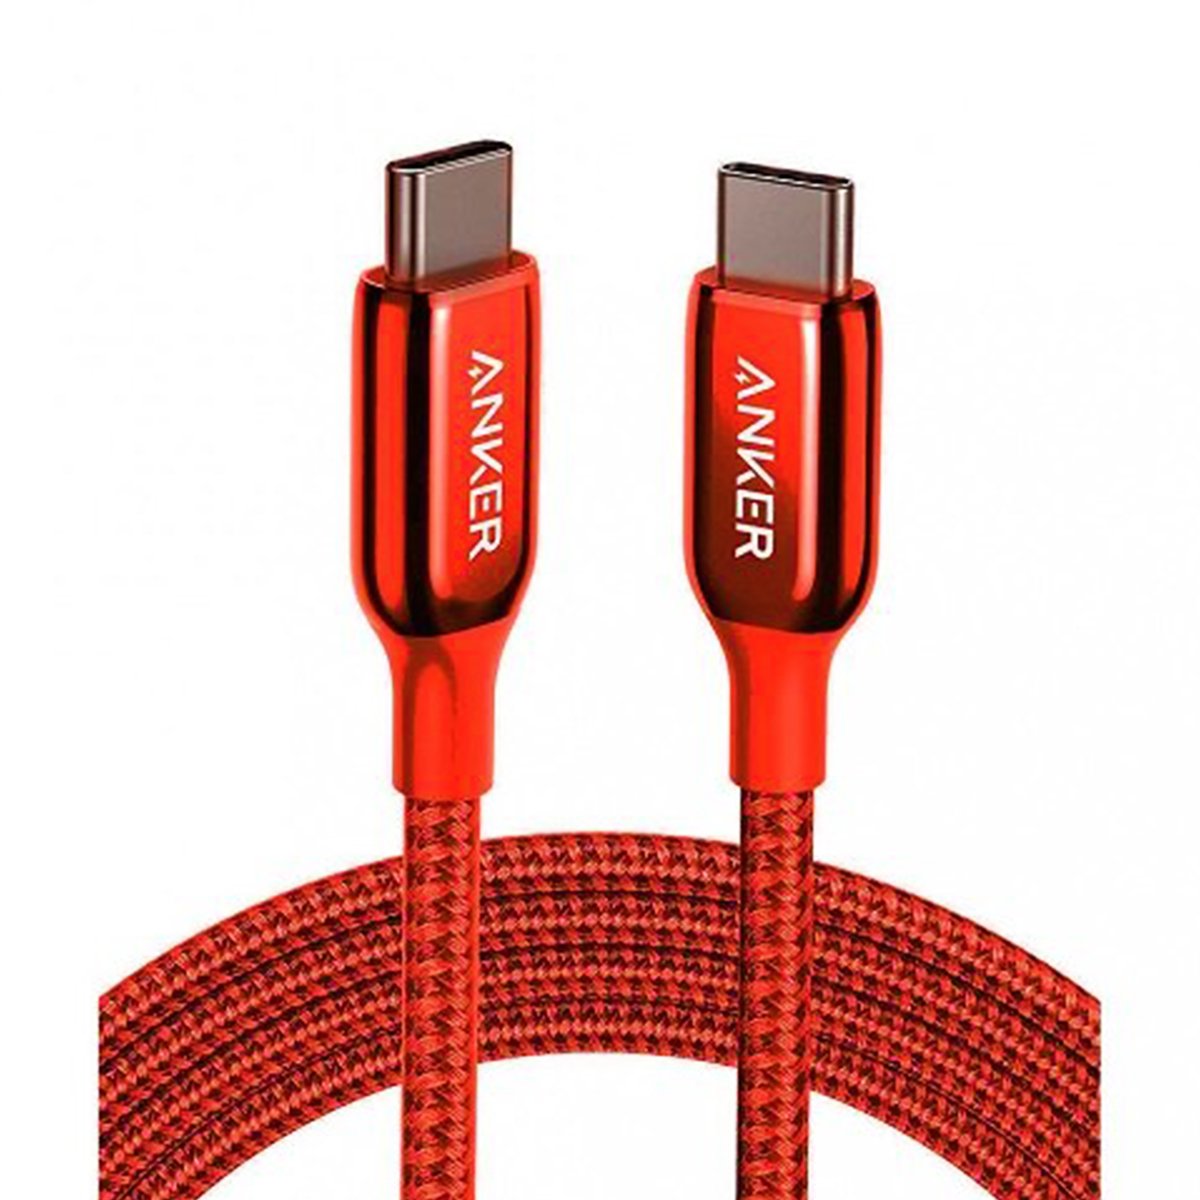 أنكر باور لاين + III كابل USB-C إلى USB-C A8863H91 1.8 متر أحمر